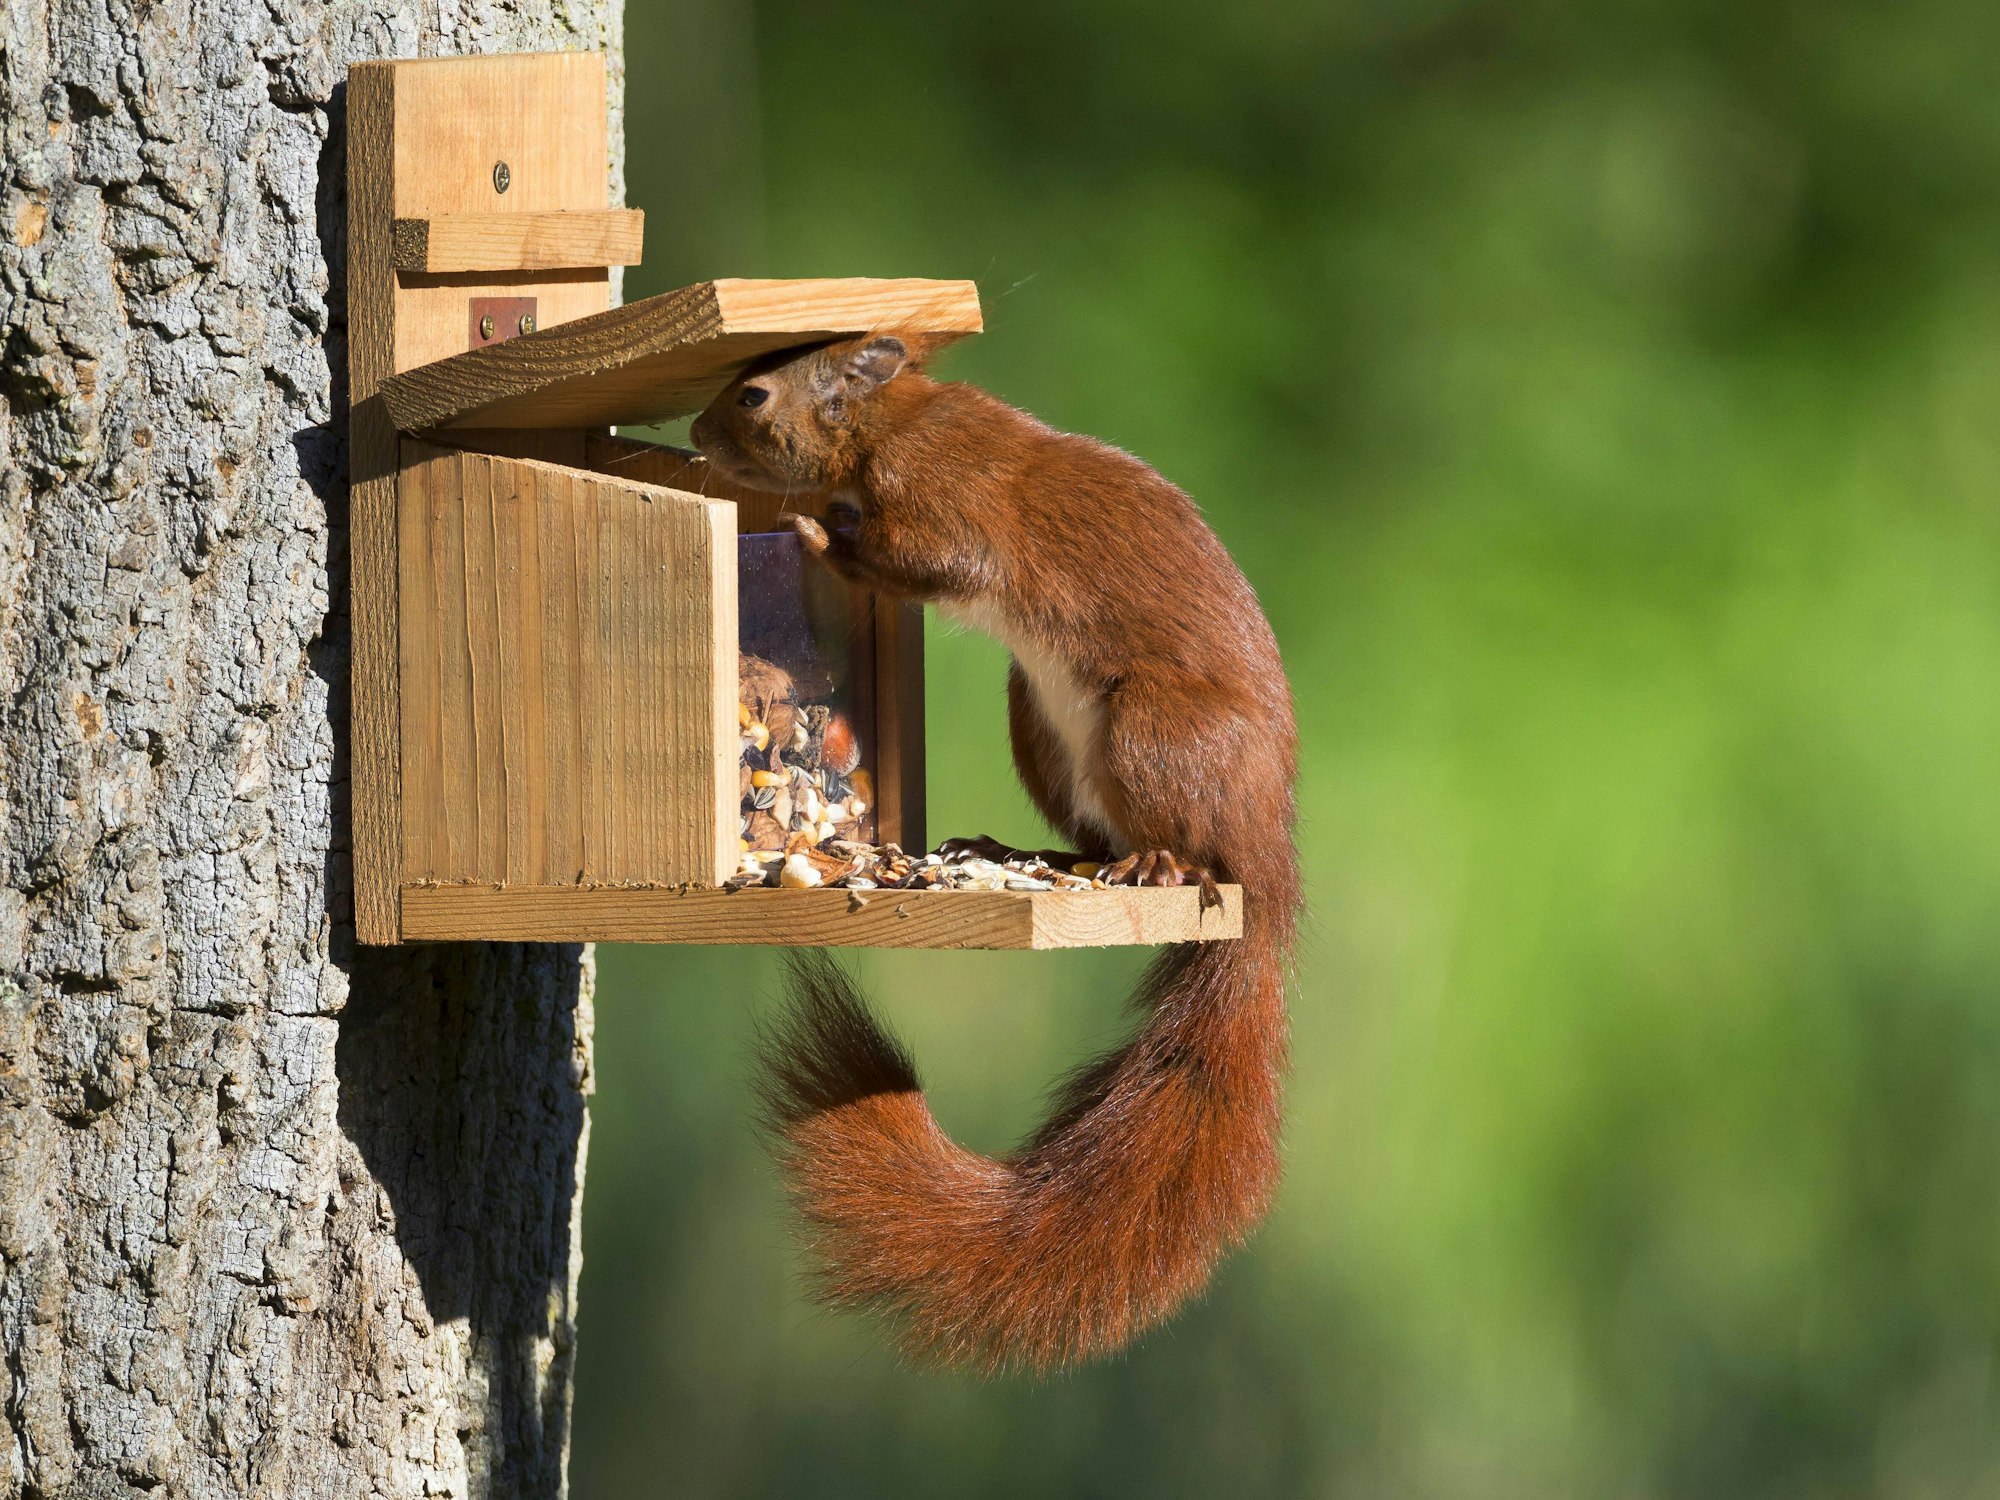 Ein Eichhörnchen bedient sich aus einem Futterkasten, der am Baum angebracht ist.